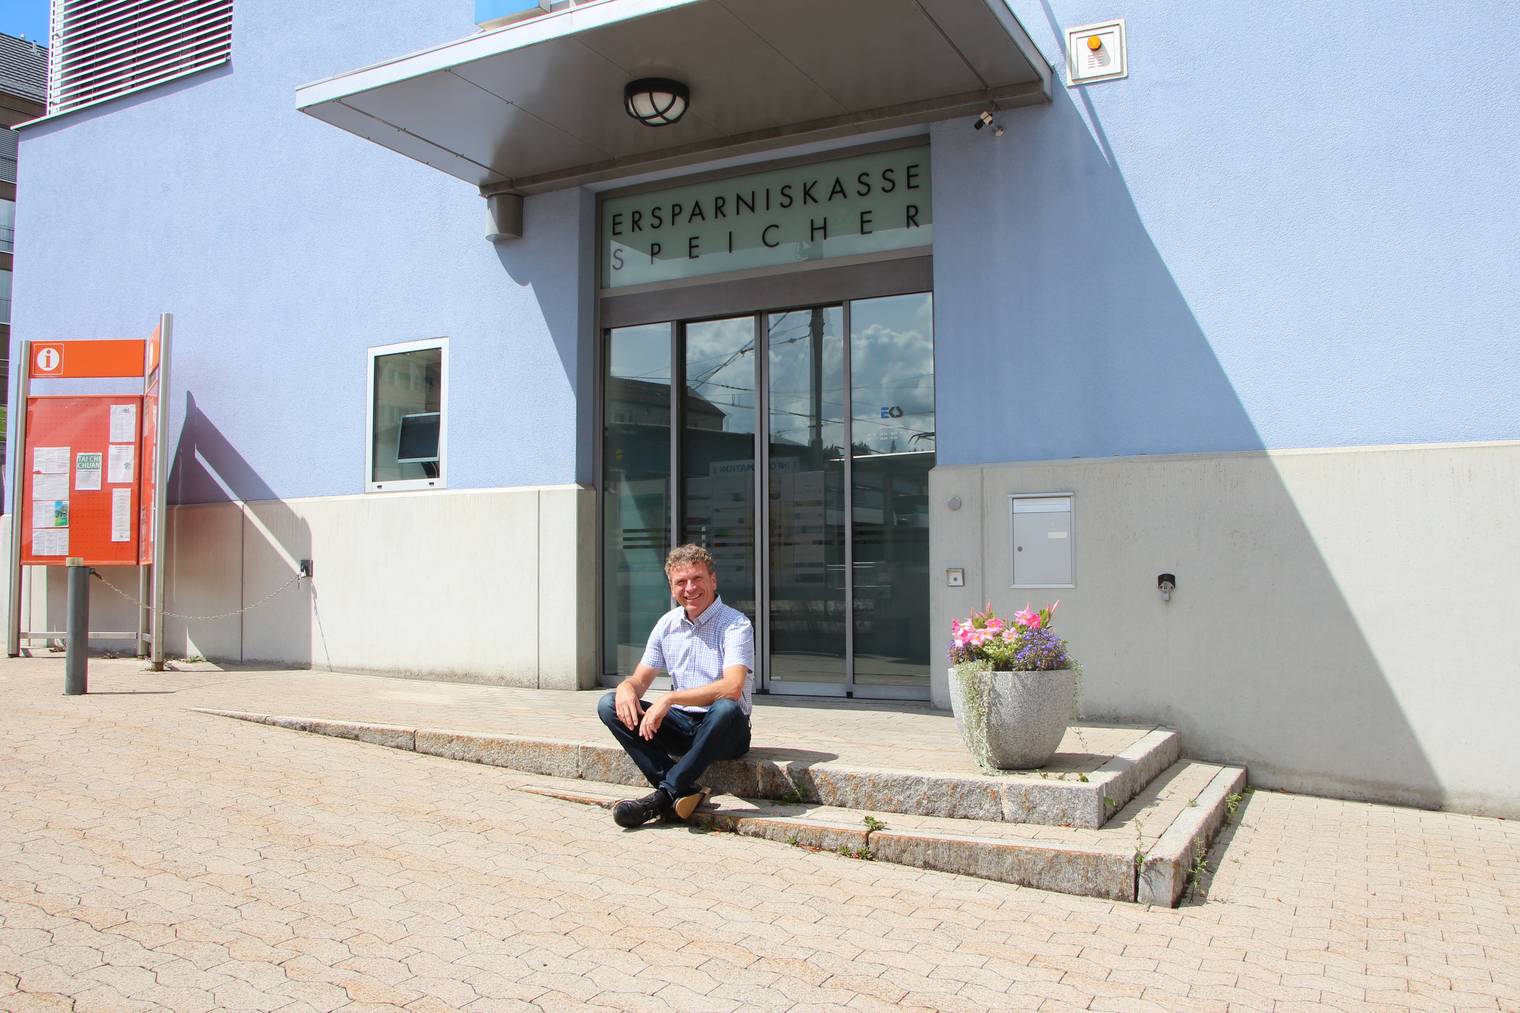 Dani Müller leitet die Dorfbank in Speicher. (Bild: FM1Today/Lara Abderhalden)